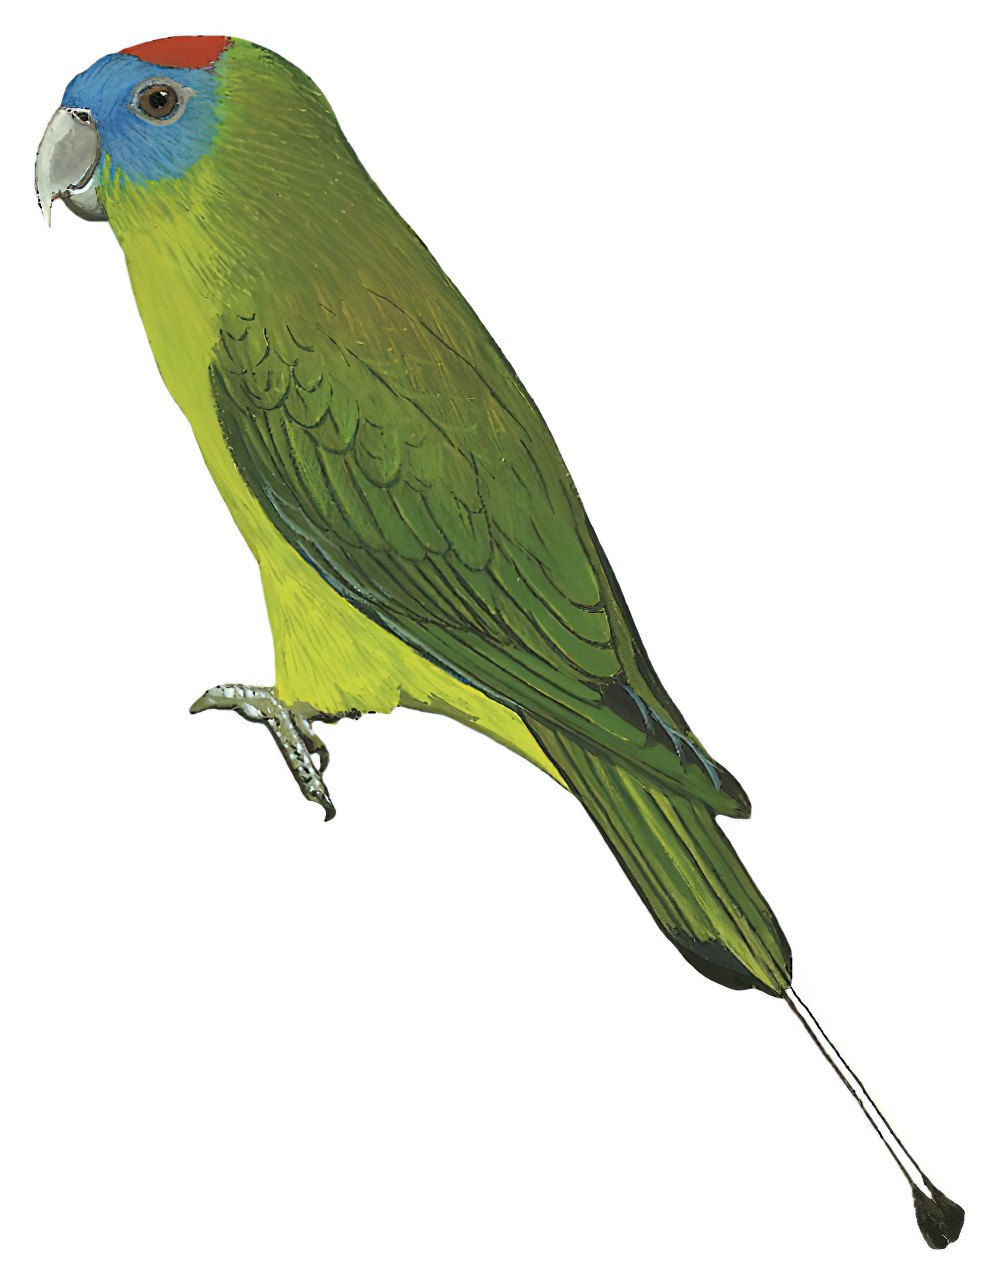 Luzon Racquet-tail / Prioniturus montanus